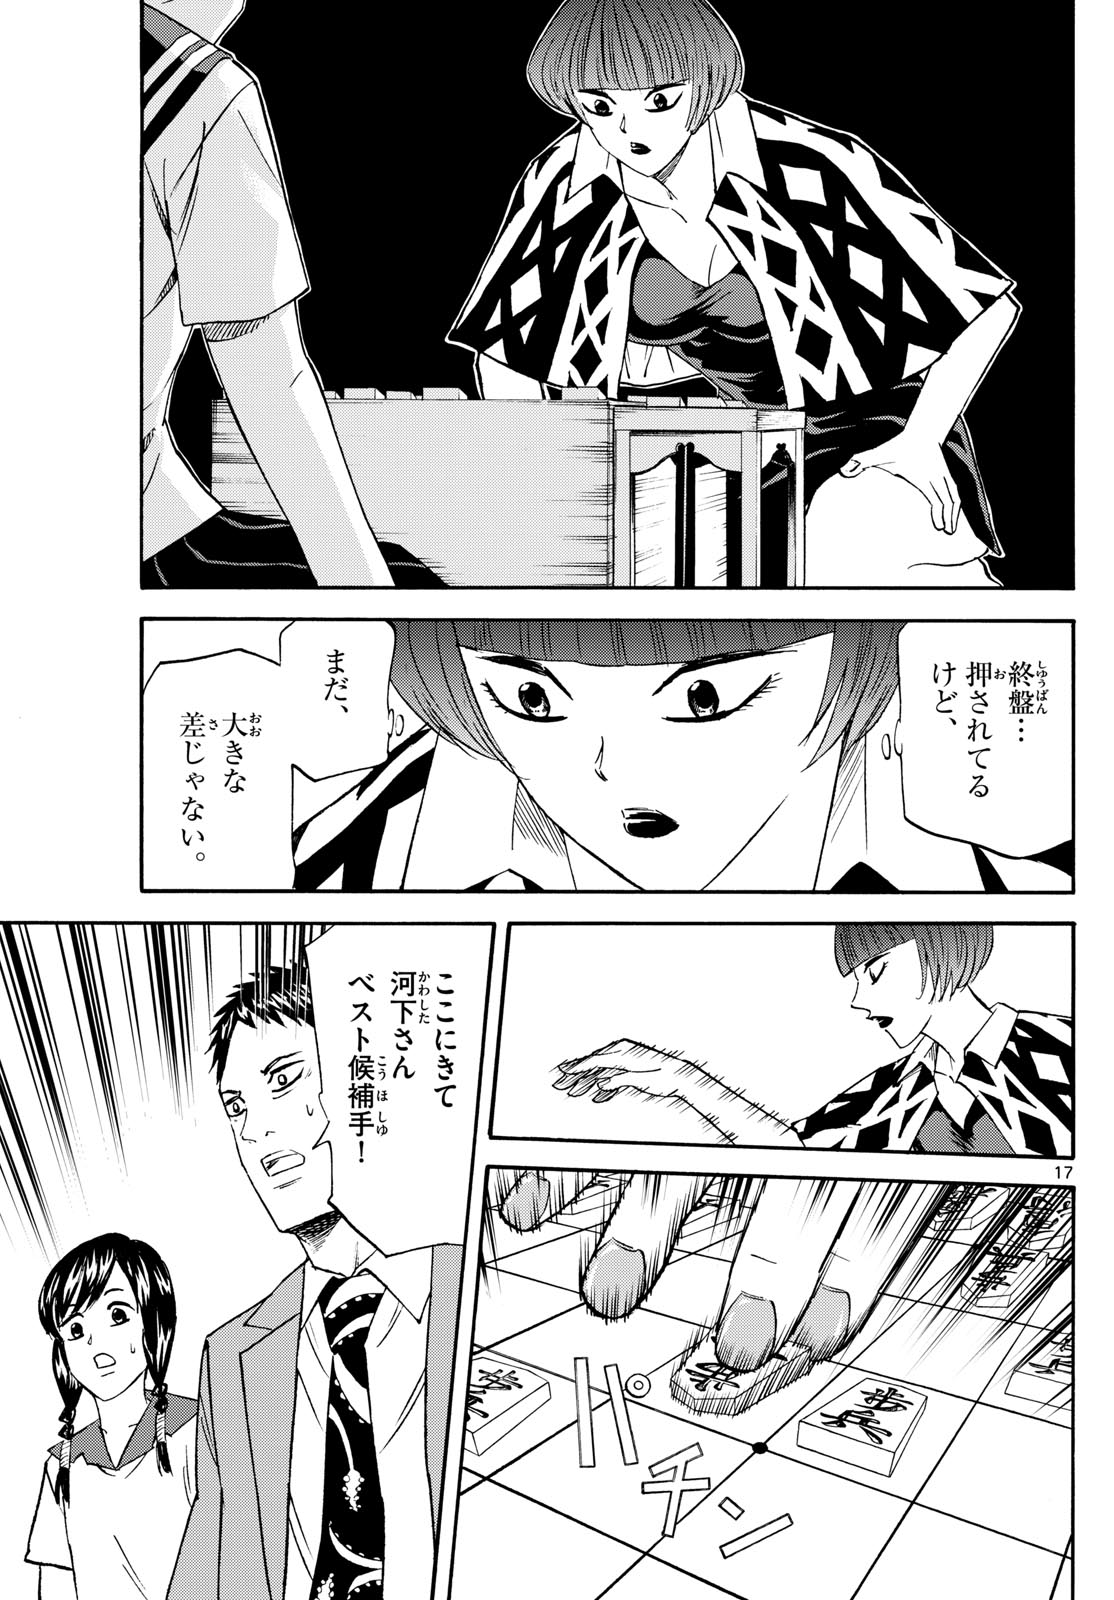 Tatsu to Ichigo - Chapter 200 - Page 17